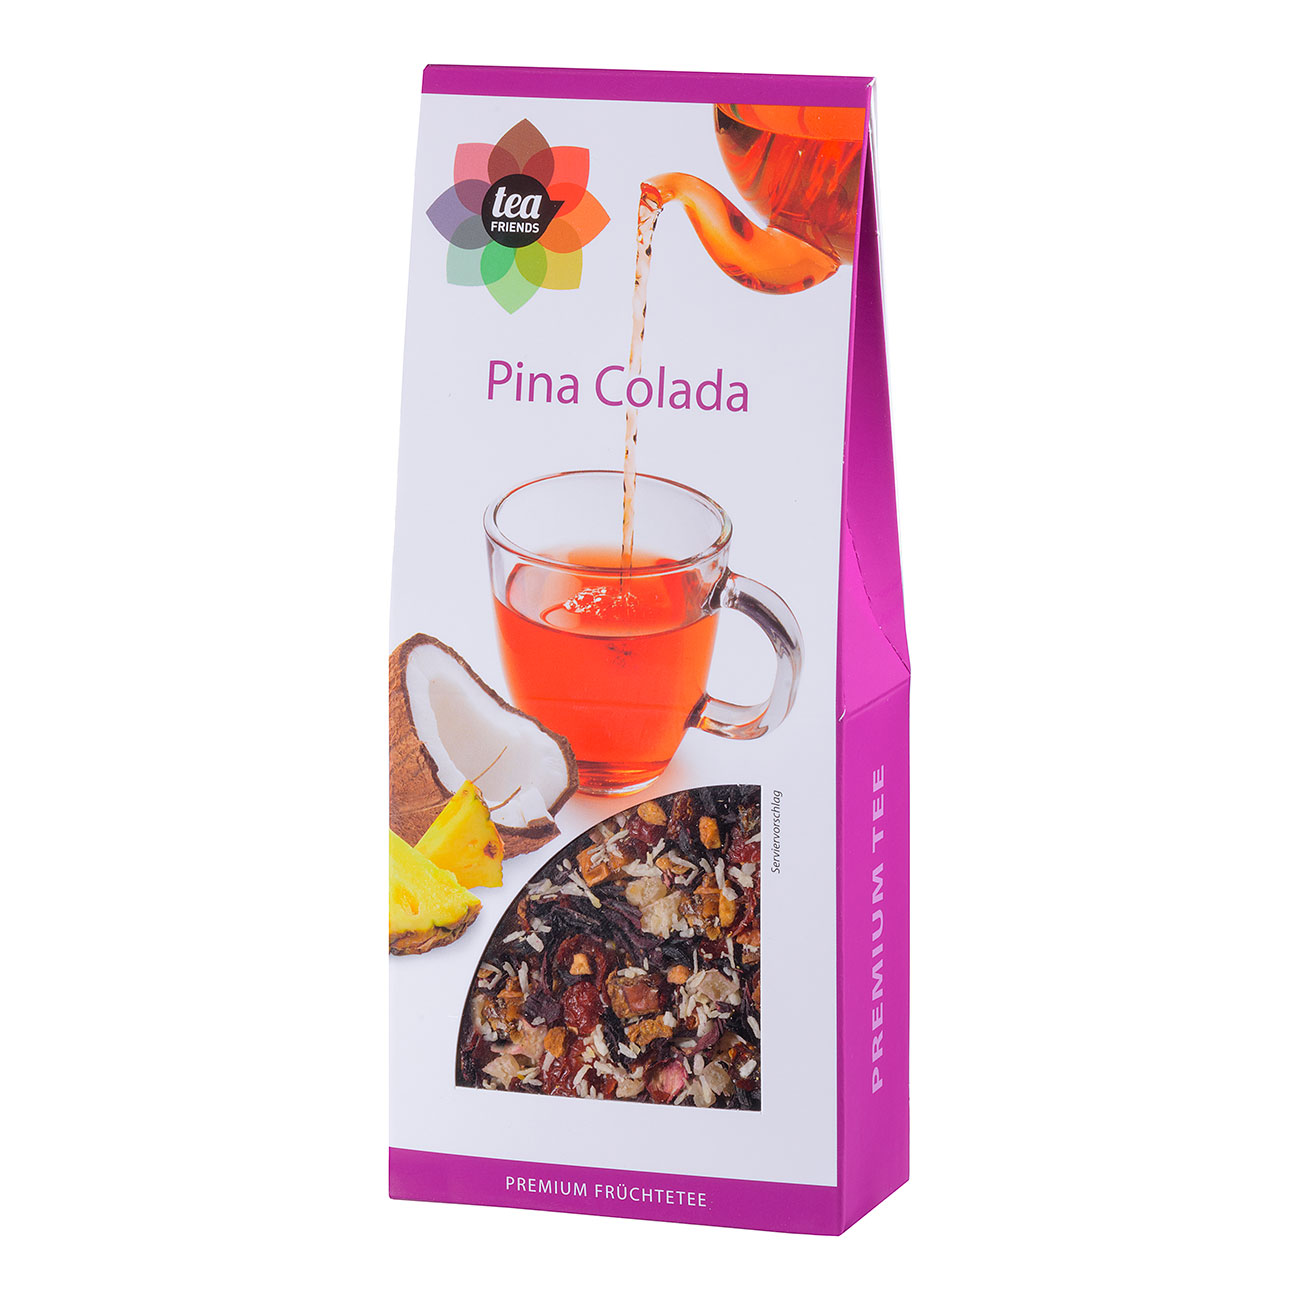 Pina Colada - 10 x 90 g Früchtetee